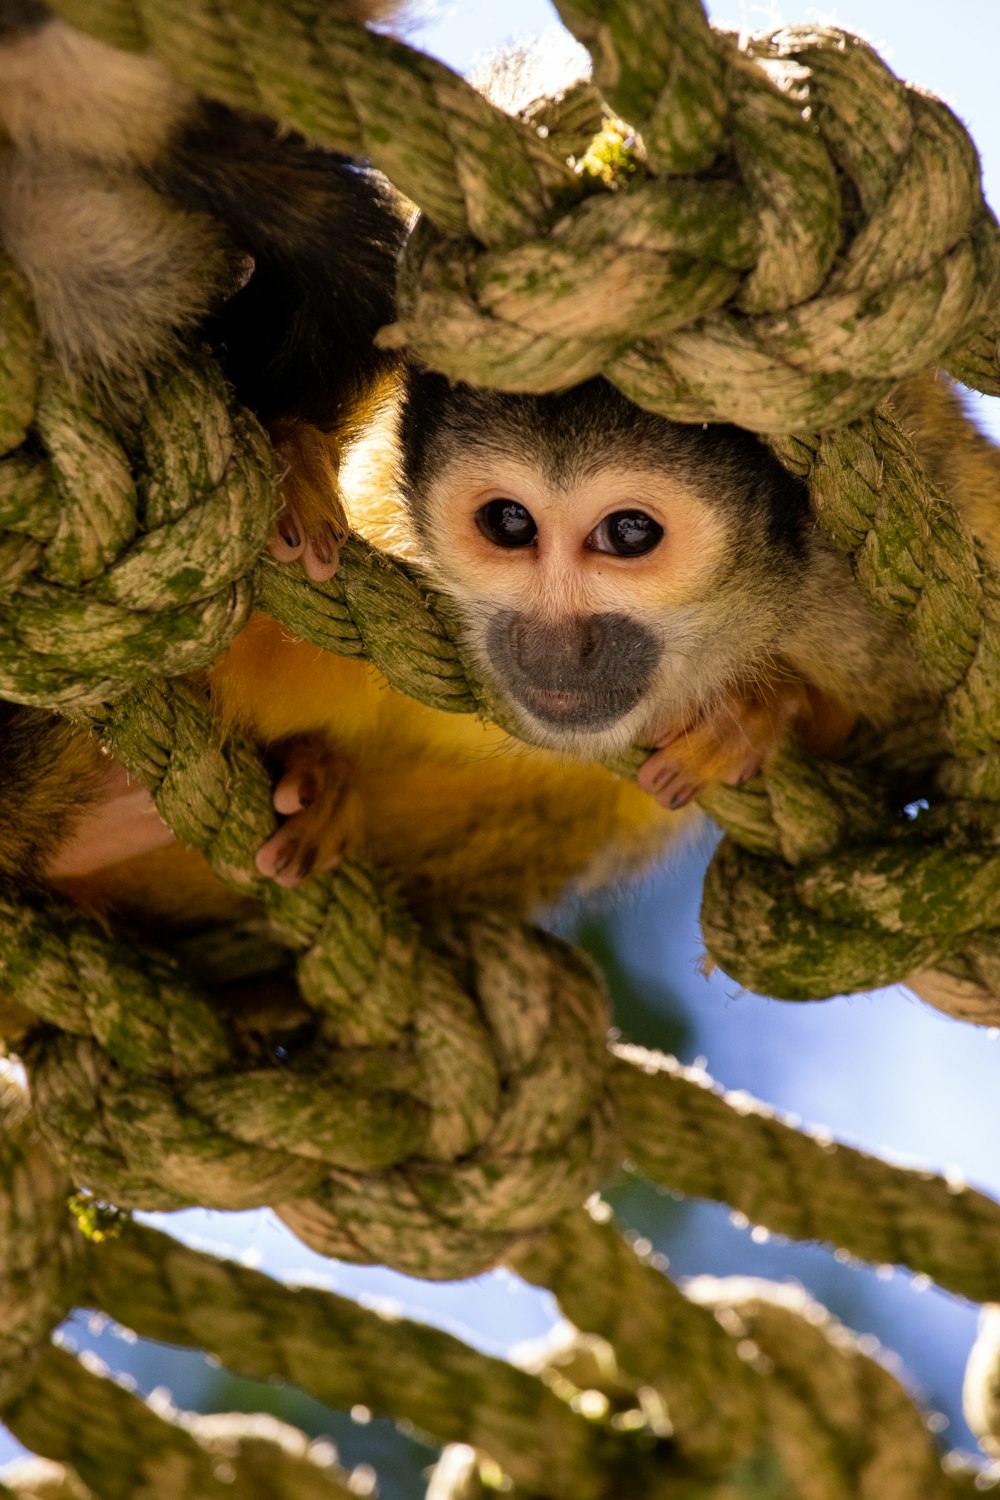 a monkey in a tree